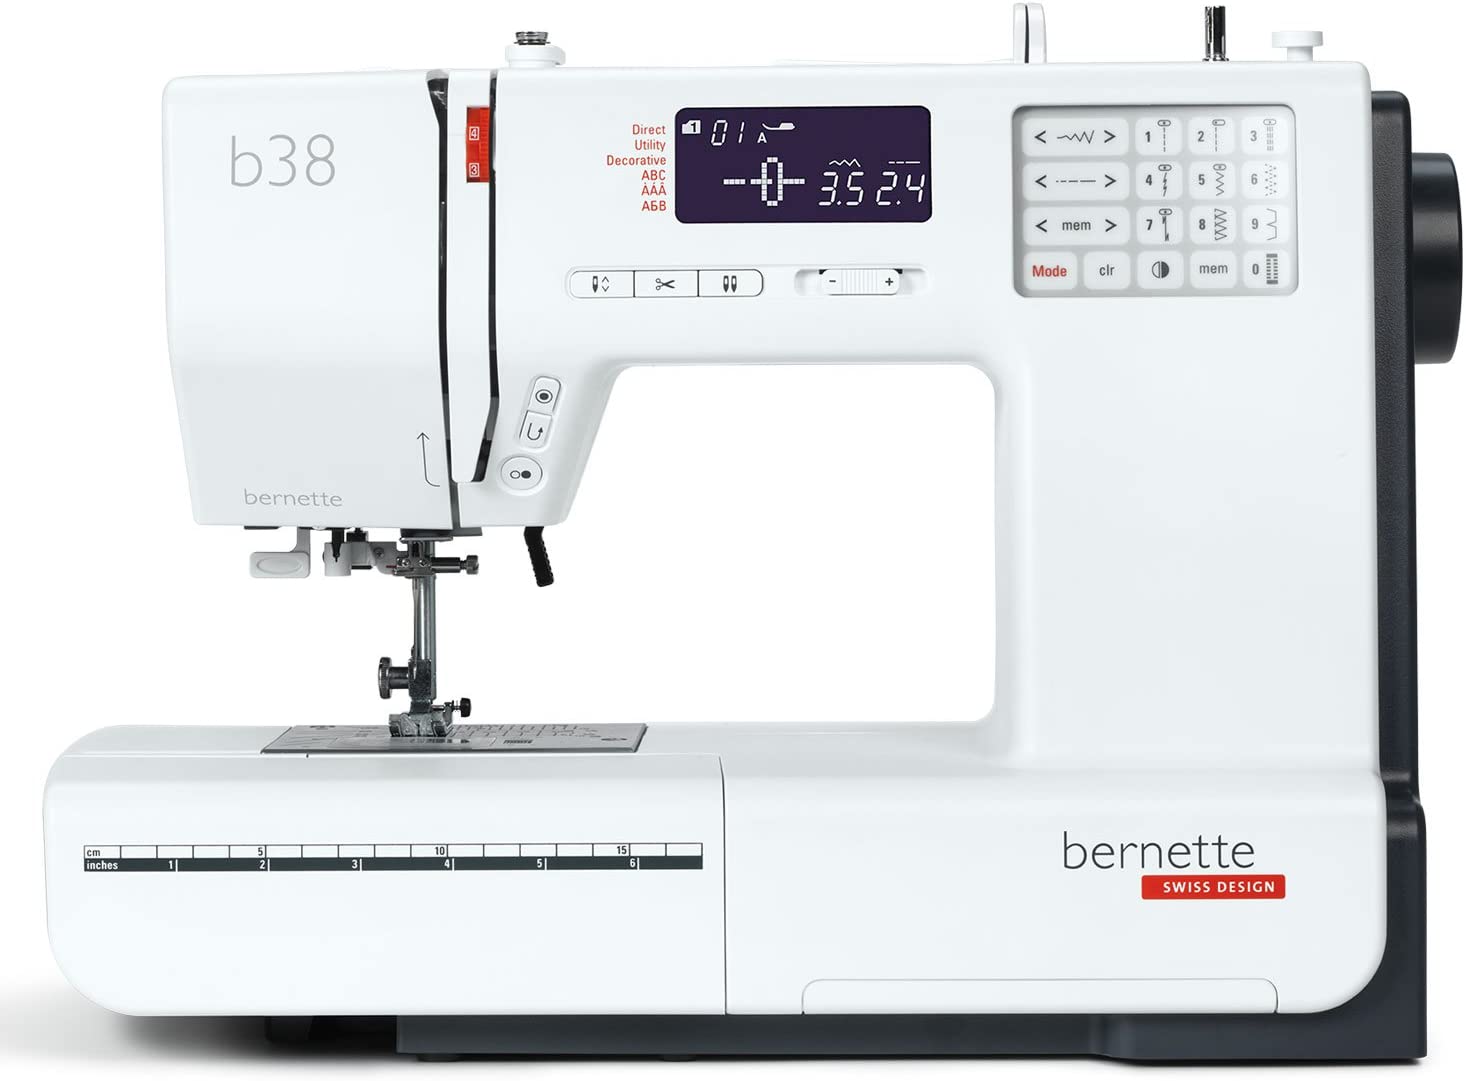 BERNETTE b38 von BERNINA - Nähmaschine mit viel Funktionen